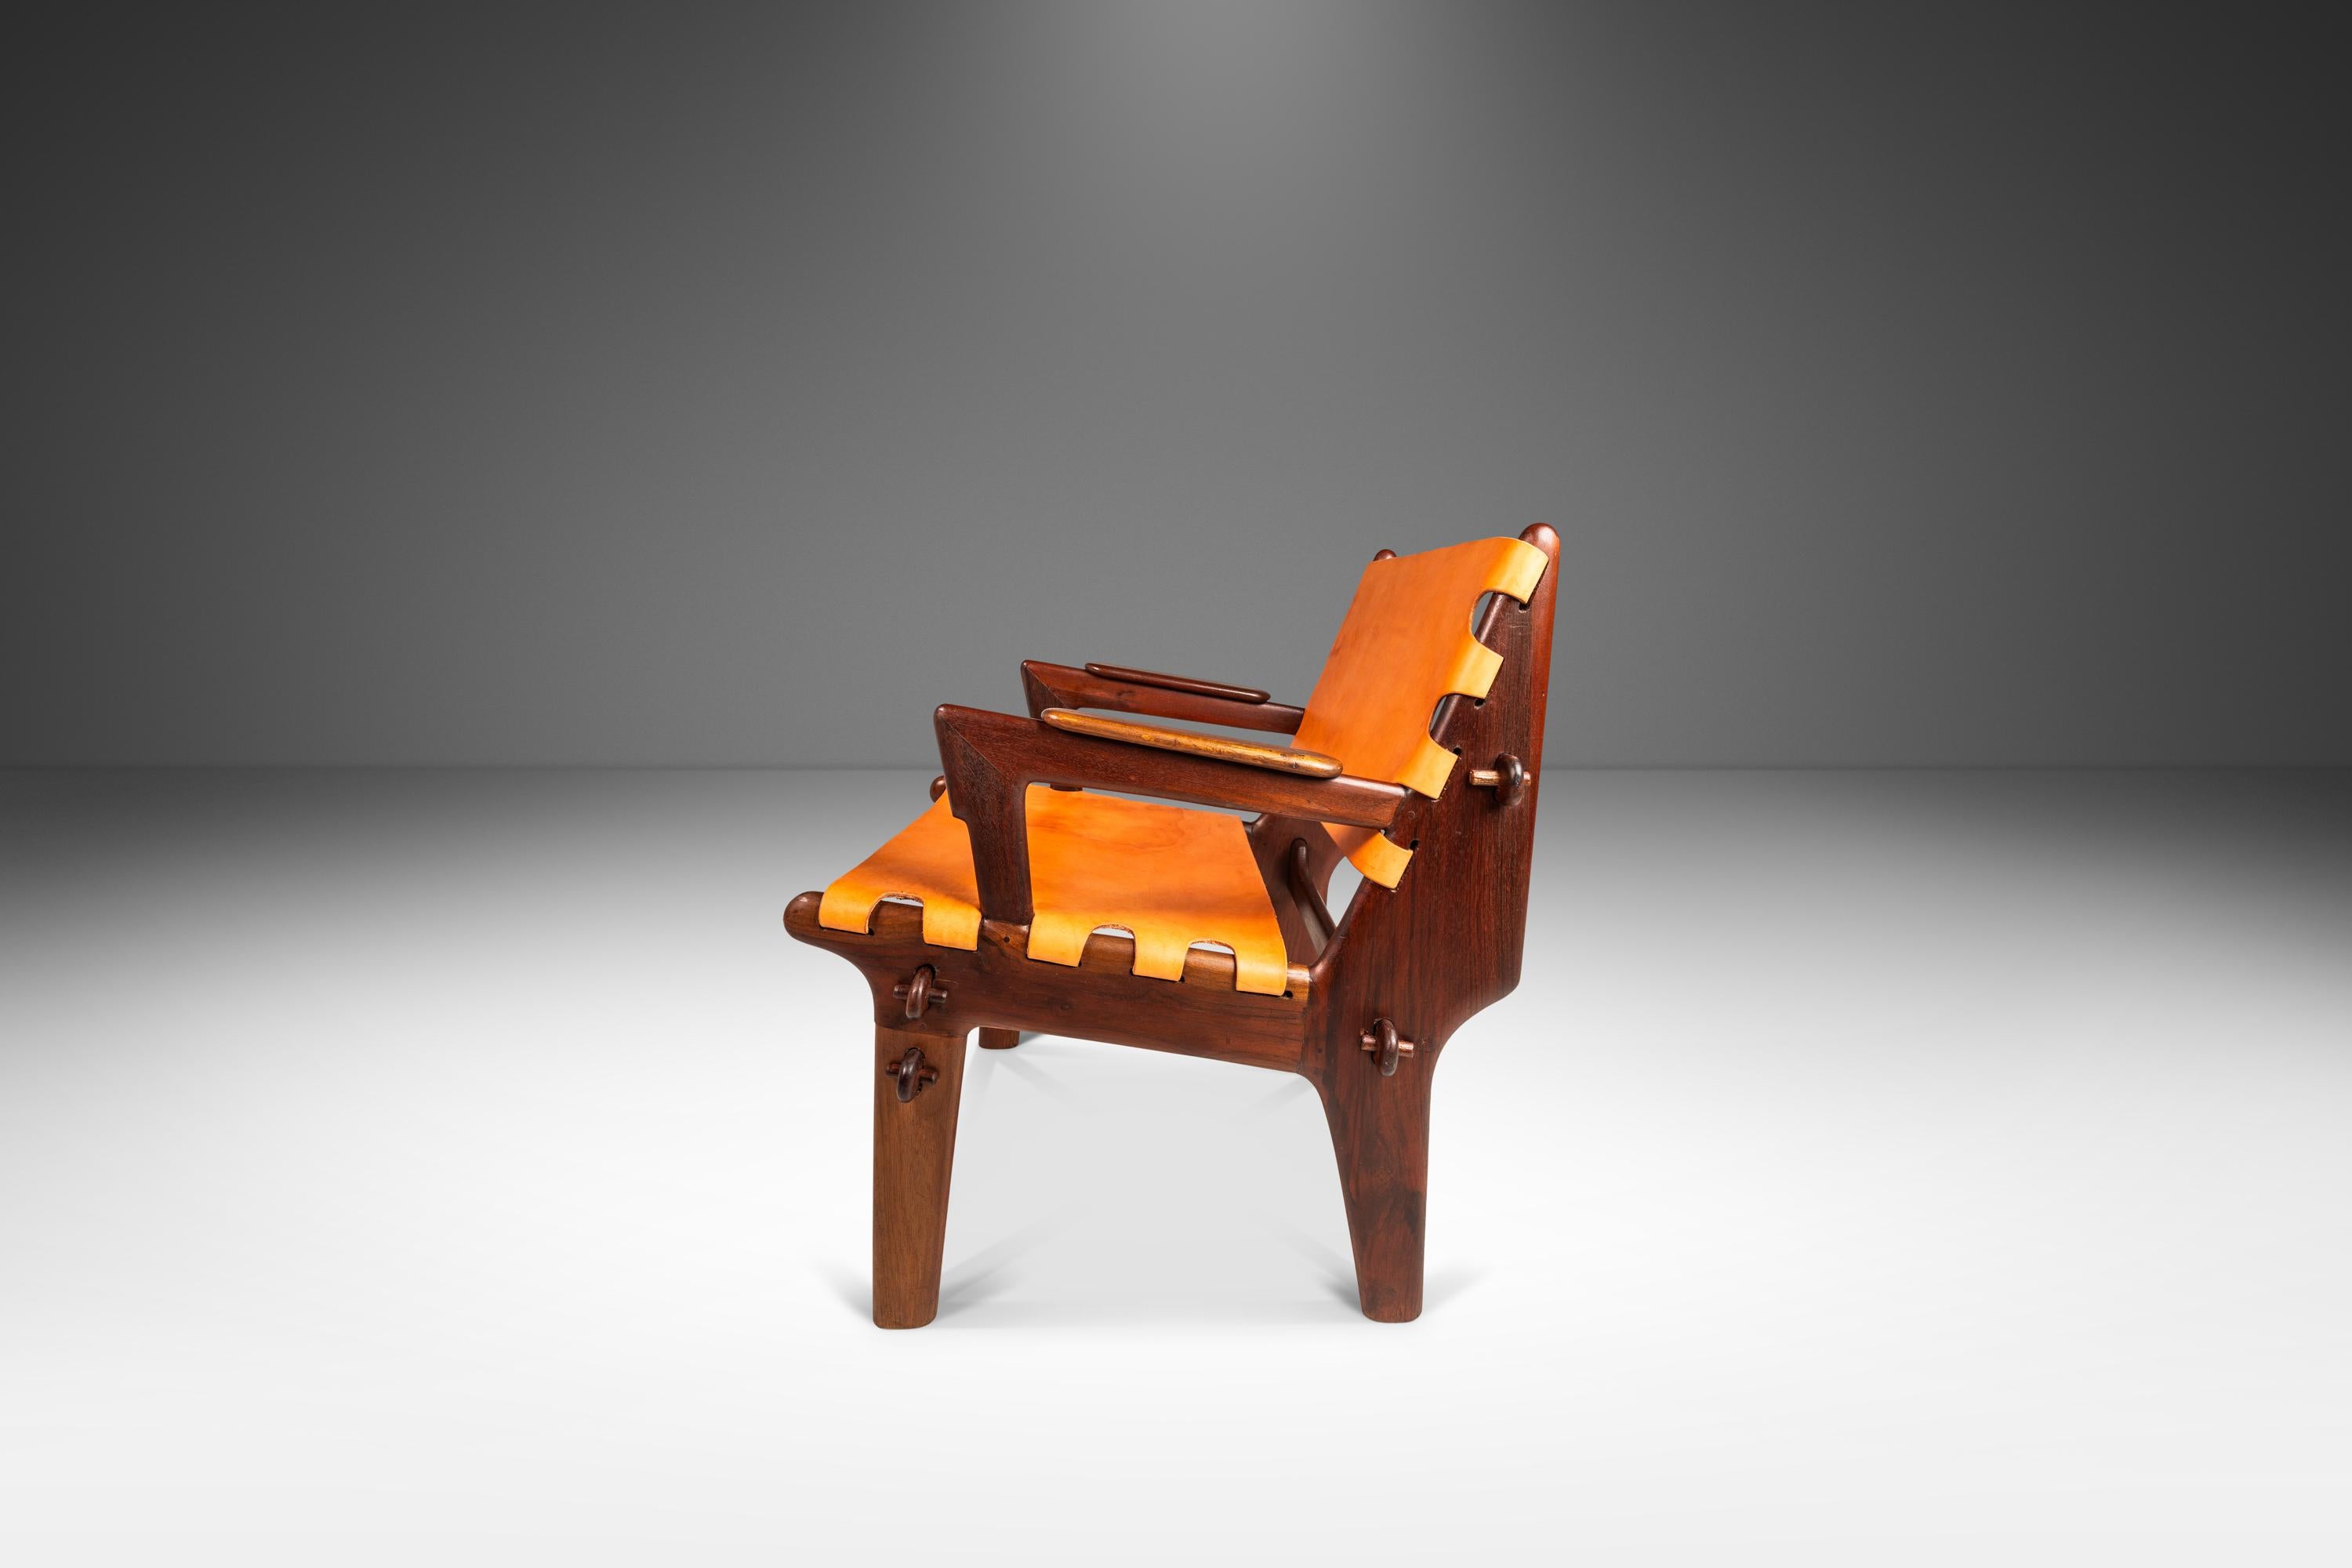 Voici une chaise en bandoulière rare de l'incomparable Angel Pazmino. Récemment et minutieusement restaurée par notre équipe d'artisans, cette chaise emblématique a retrouvé une nouvelle jeunesse et nous adorons le résultat. Le cadre en bois de